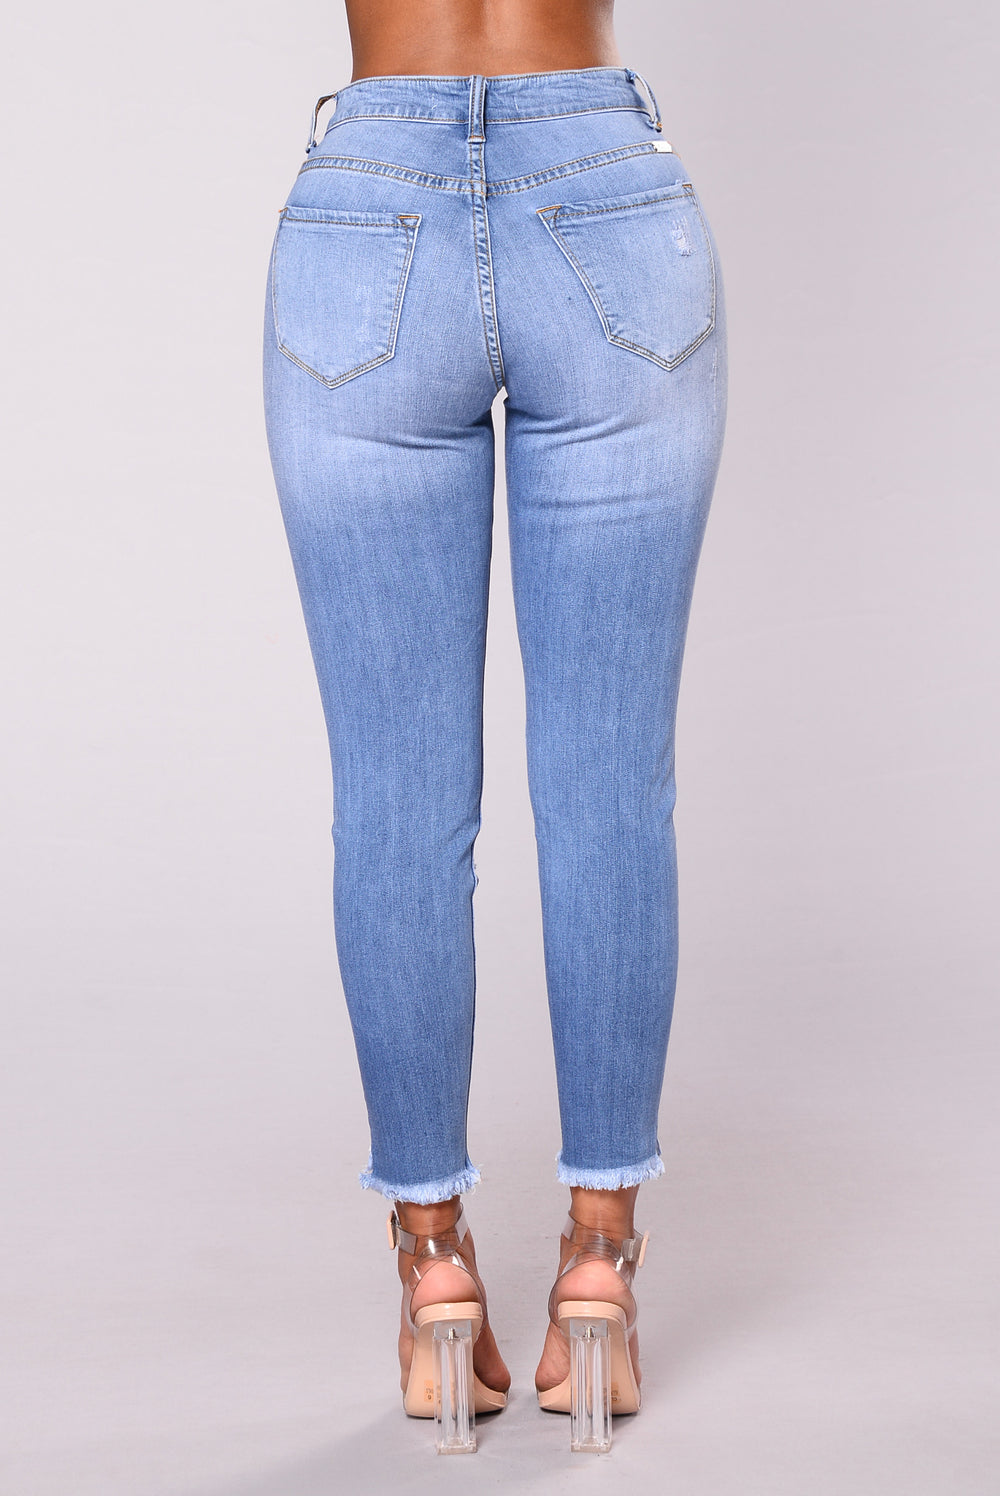 Evelyn Distressed Fringe Skinny Jeans - Light Blue